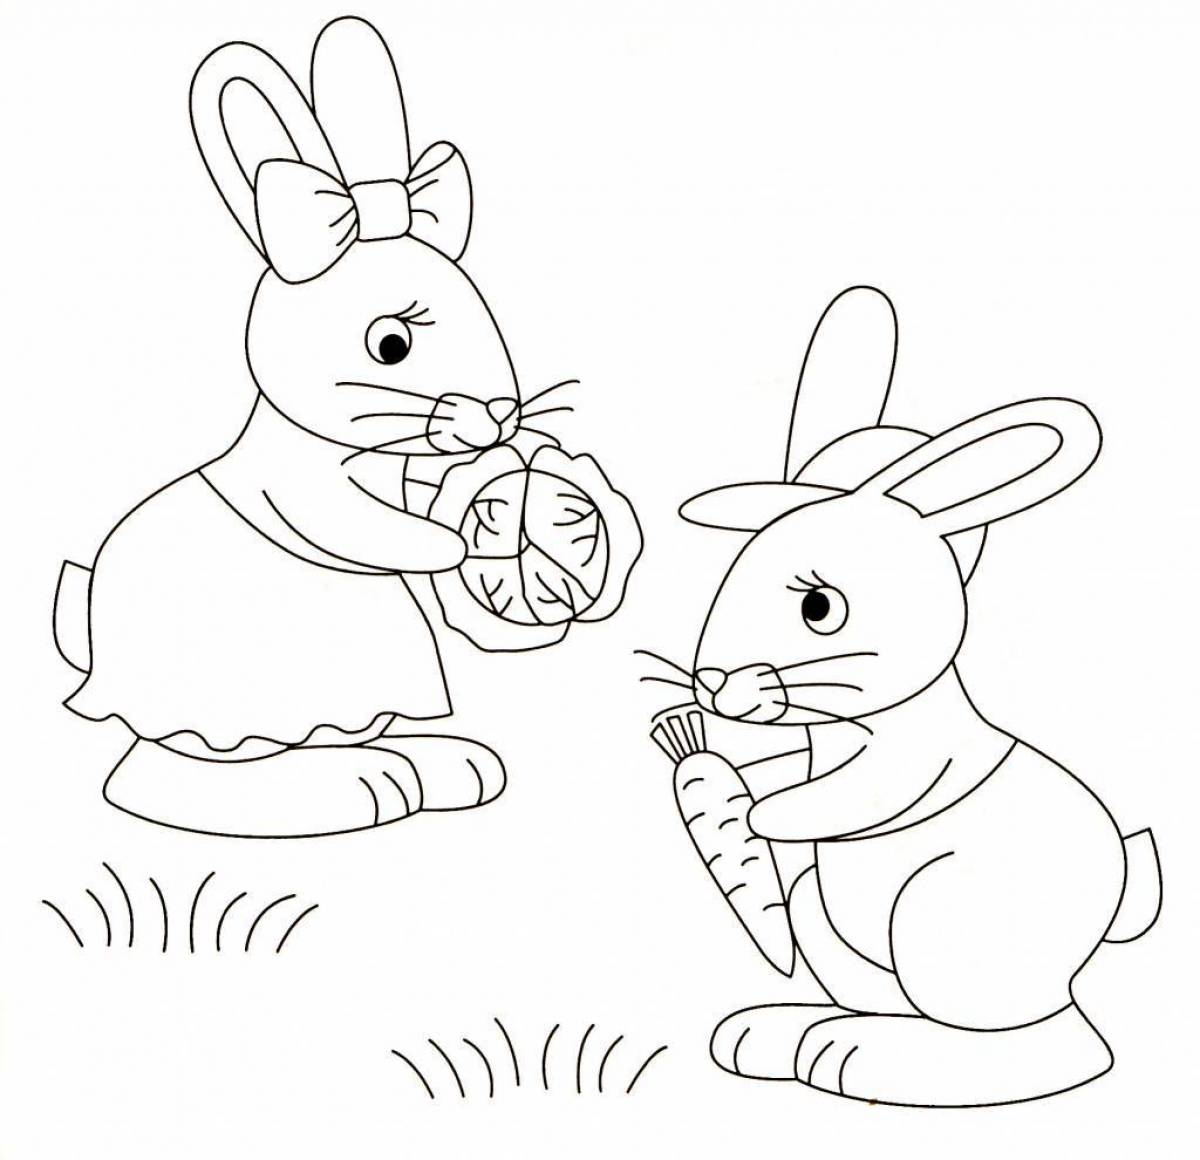 Увлекательная игра-раскраска кролика